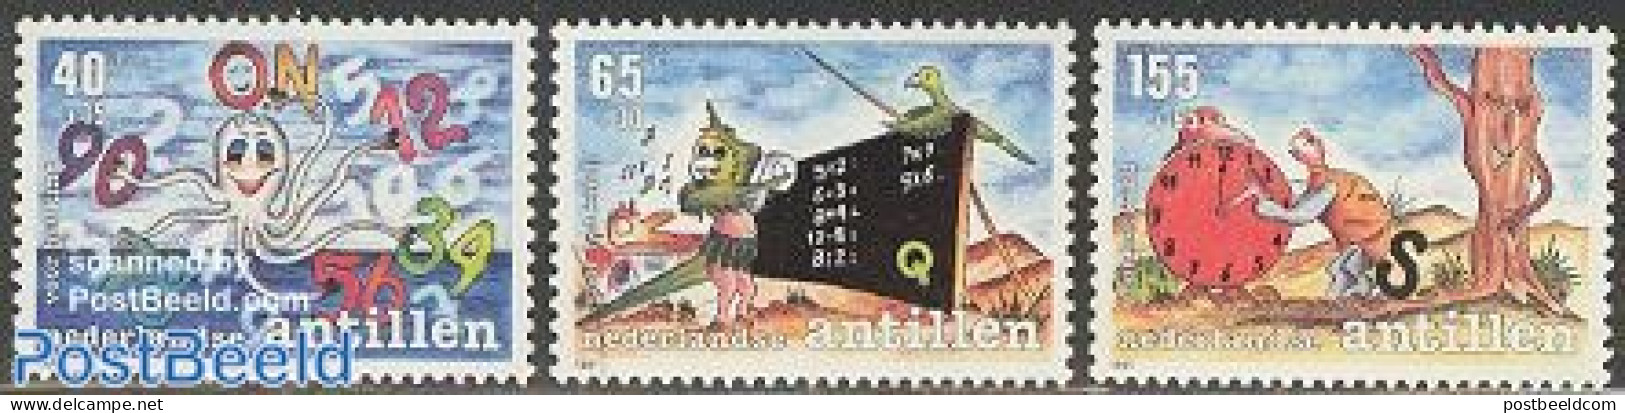 Netherlands Antilles 1991 Child Welfare 3v, Mint NH, Nature - Science - Turtles - Education - Art - Children's Books I.. - Horloges